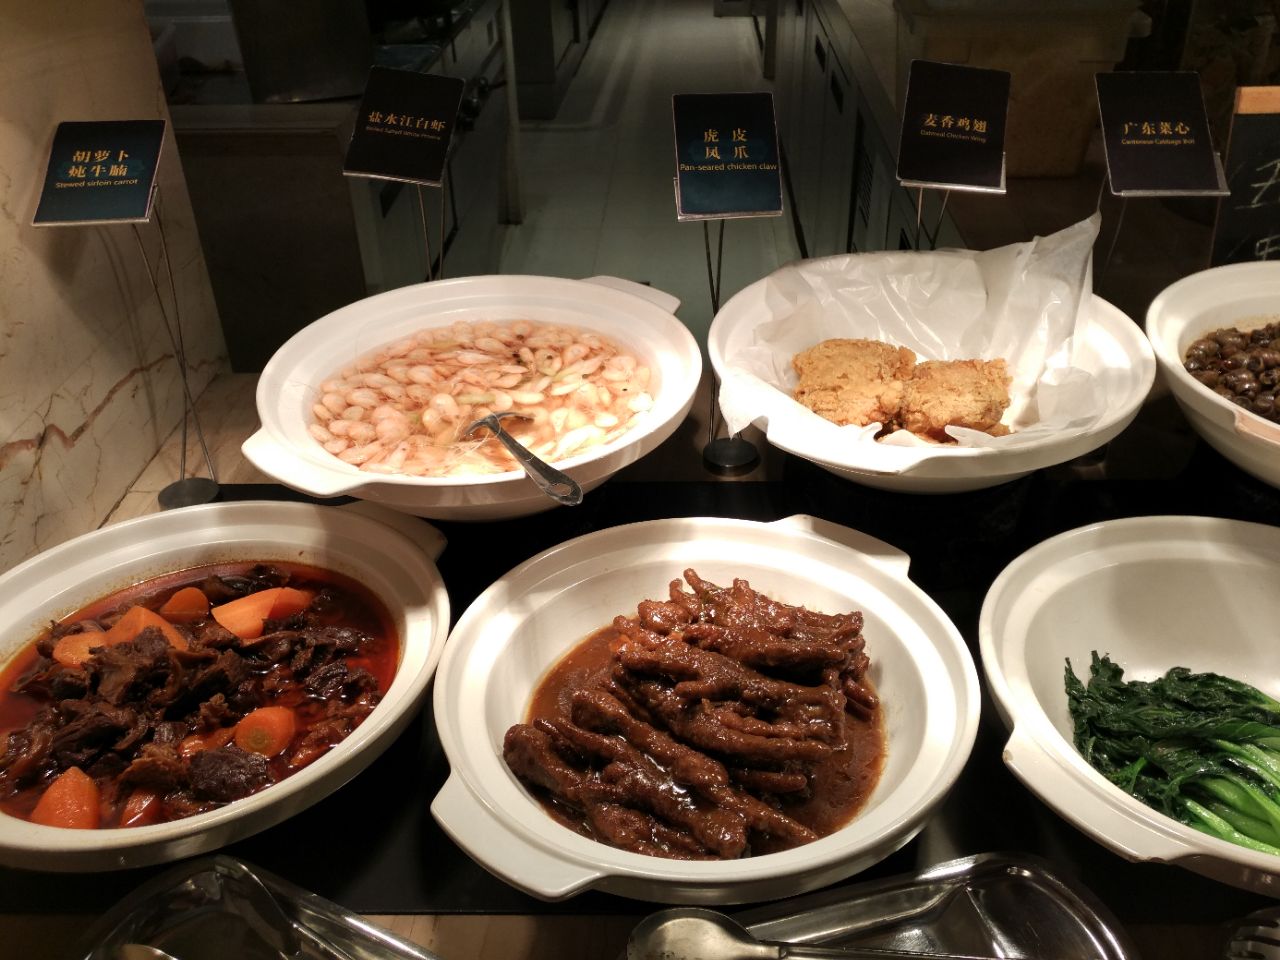 酒店自助餐台订制 食物保温台 餐饮厨房设备-阿里巴巴